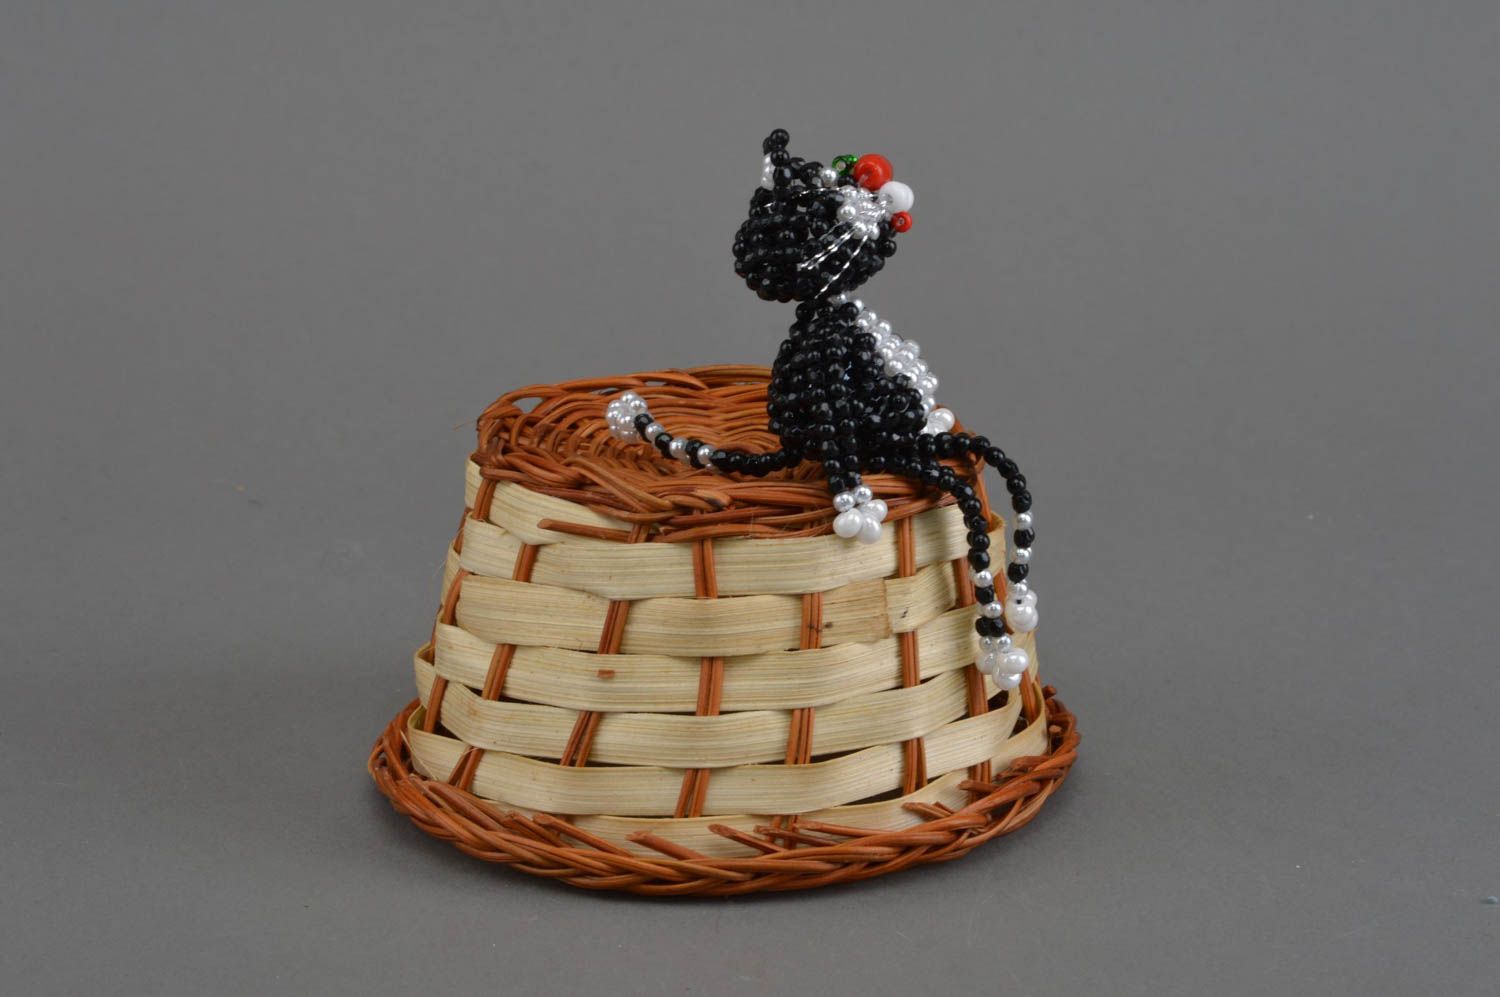 Фигурка кота из бисера с технике плетения для коллекции и декора хэнд мэйд фото 5